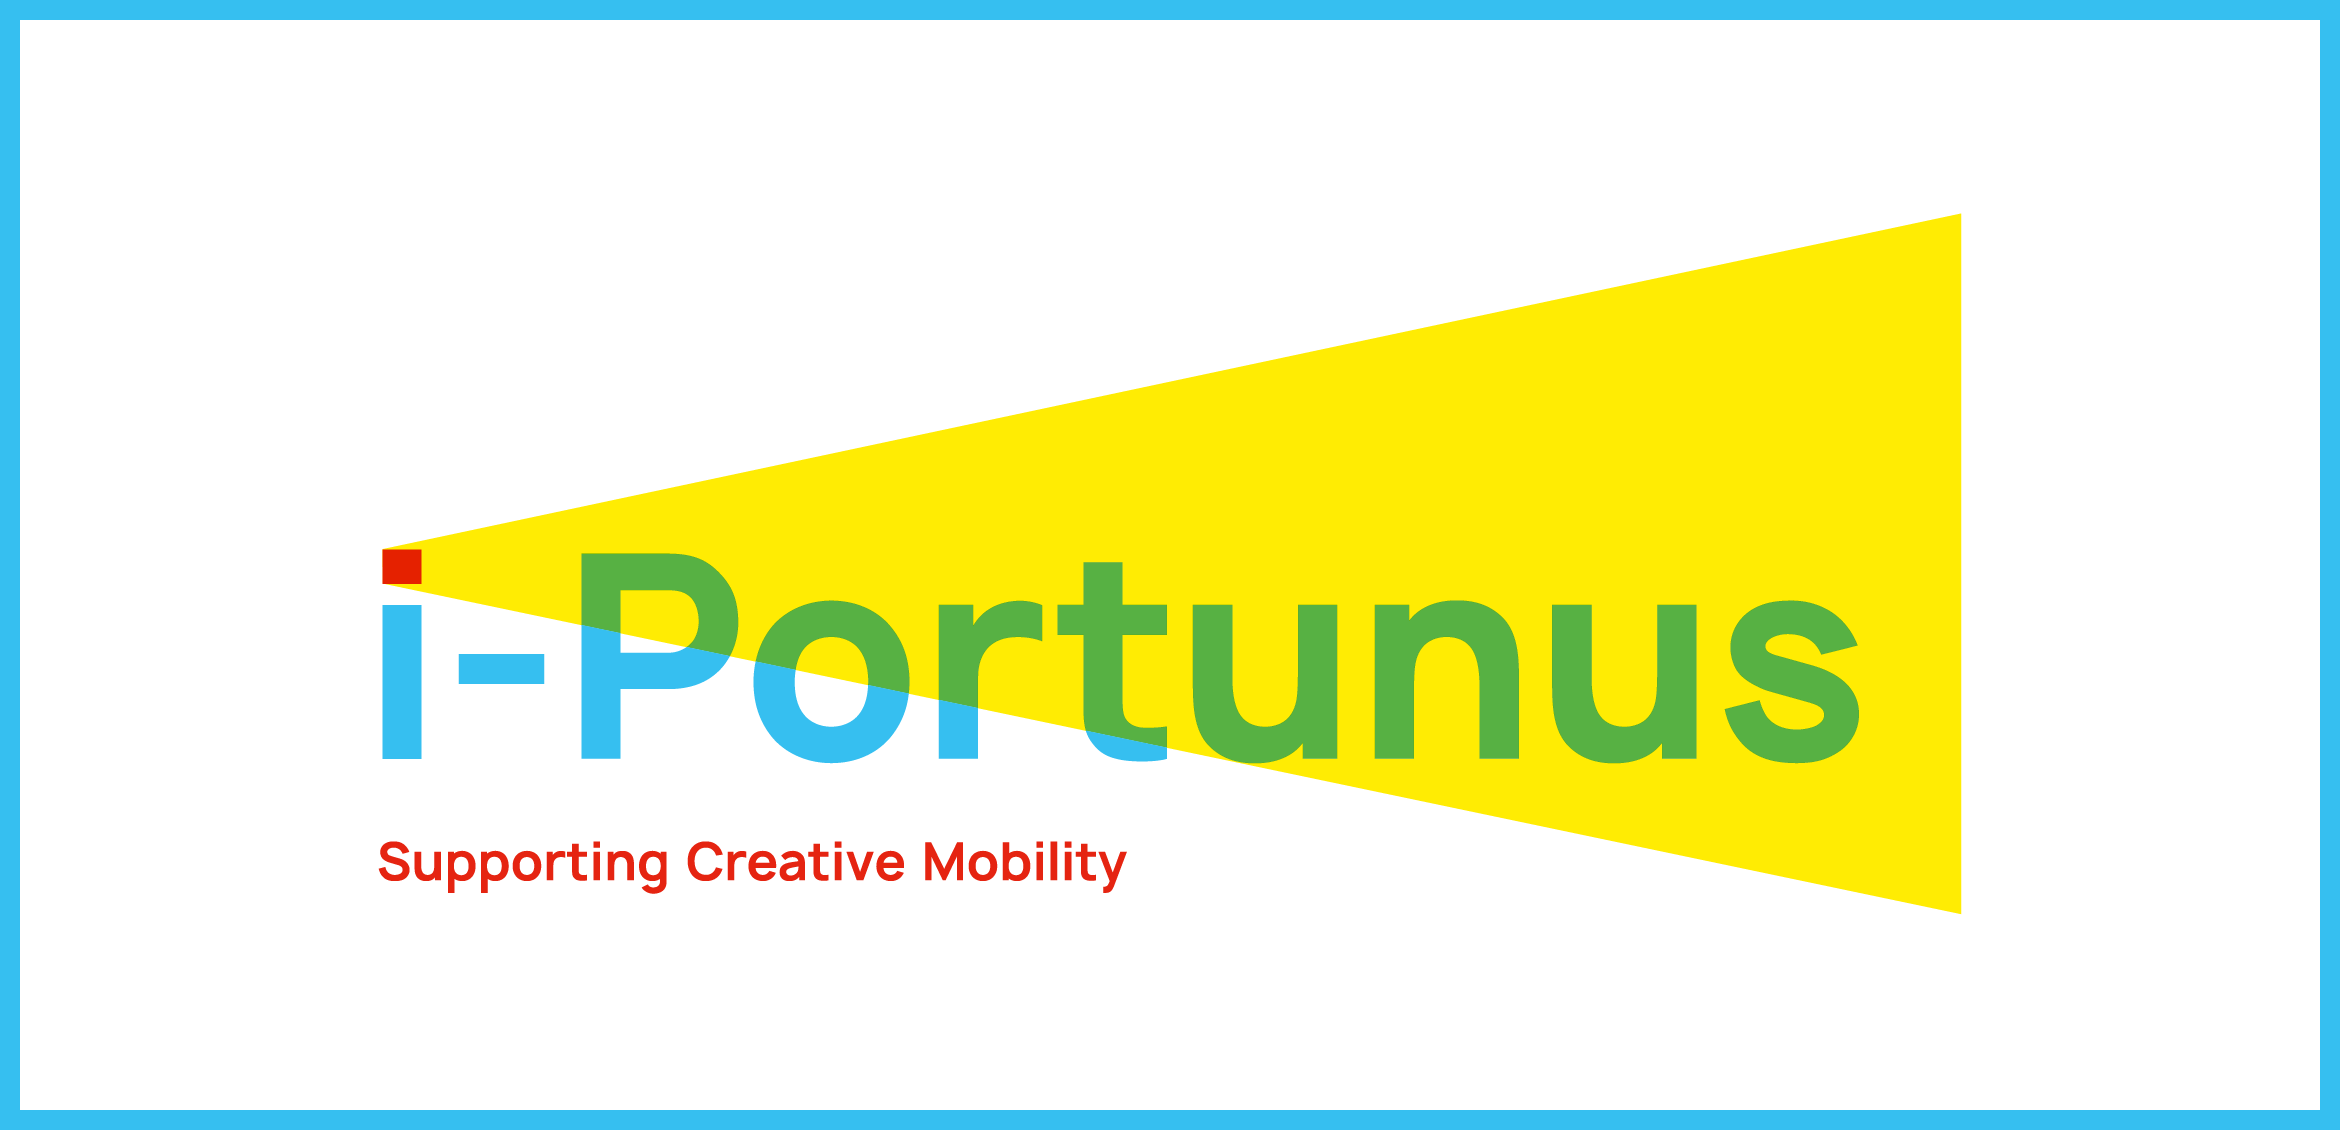 I-Portunus 2020-22. Програма мобільності європейського союзу для художників та культурних професіоналів.